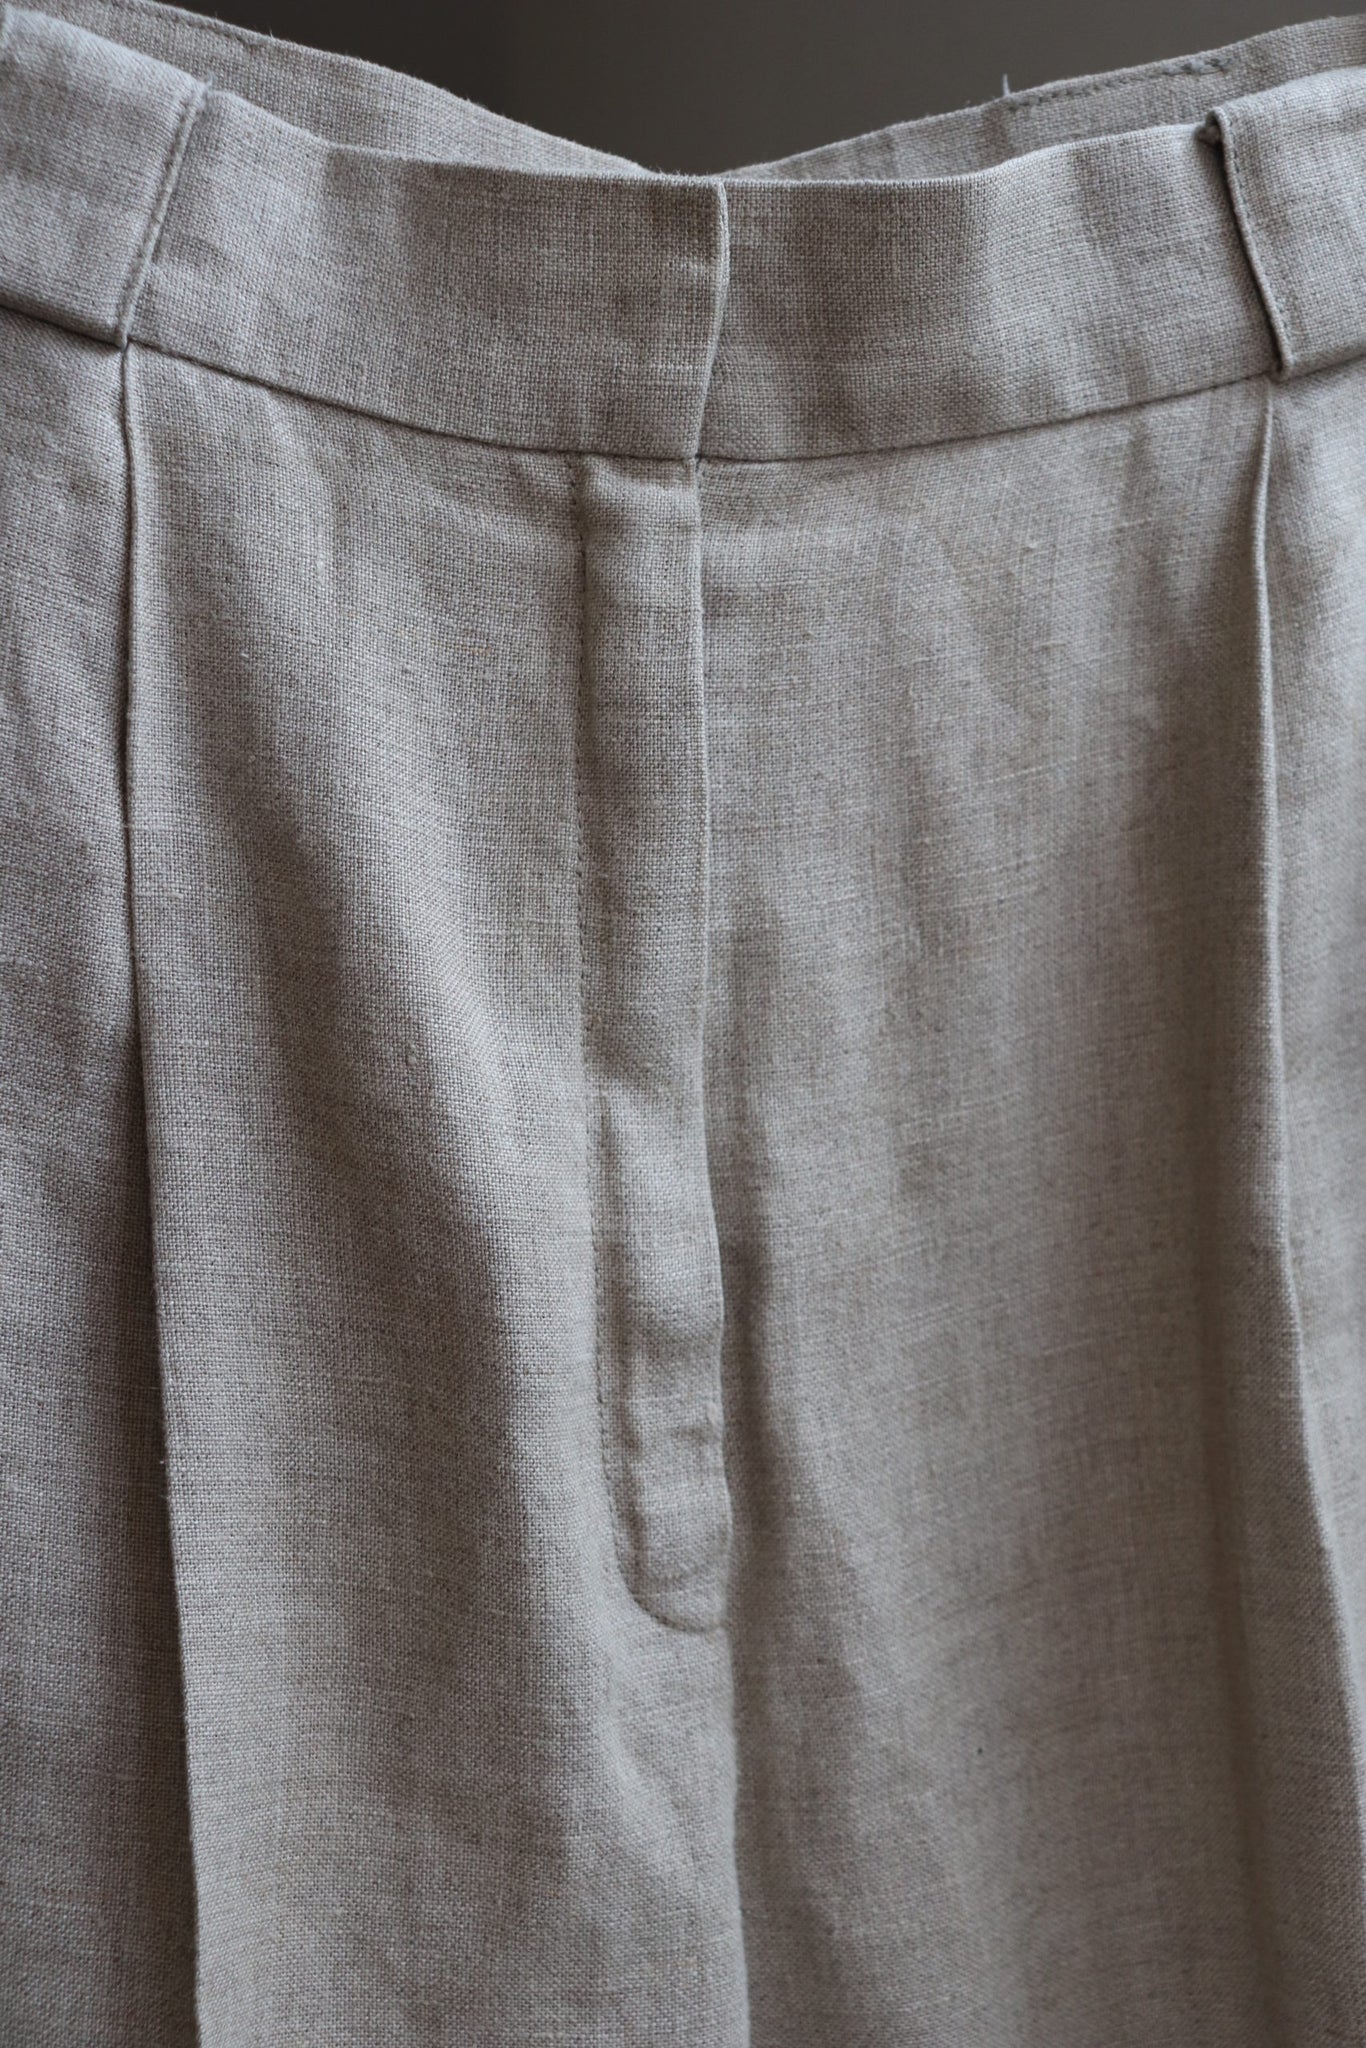 Vintage Linen Pants Oatmeal